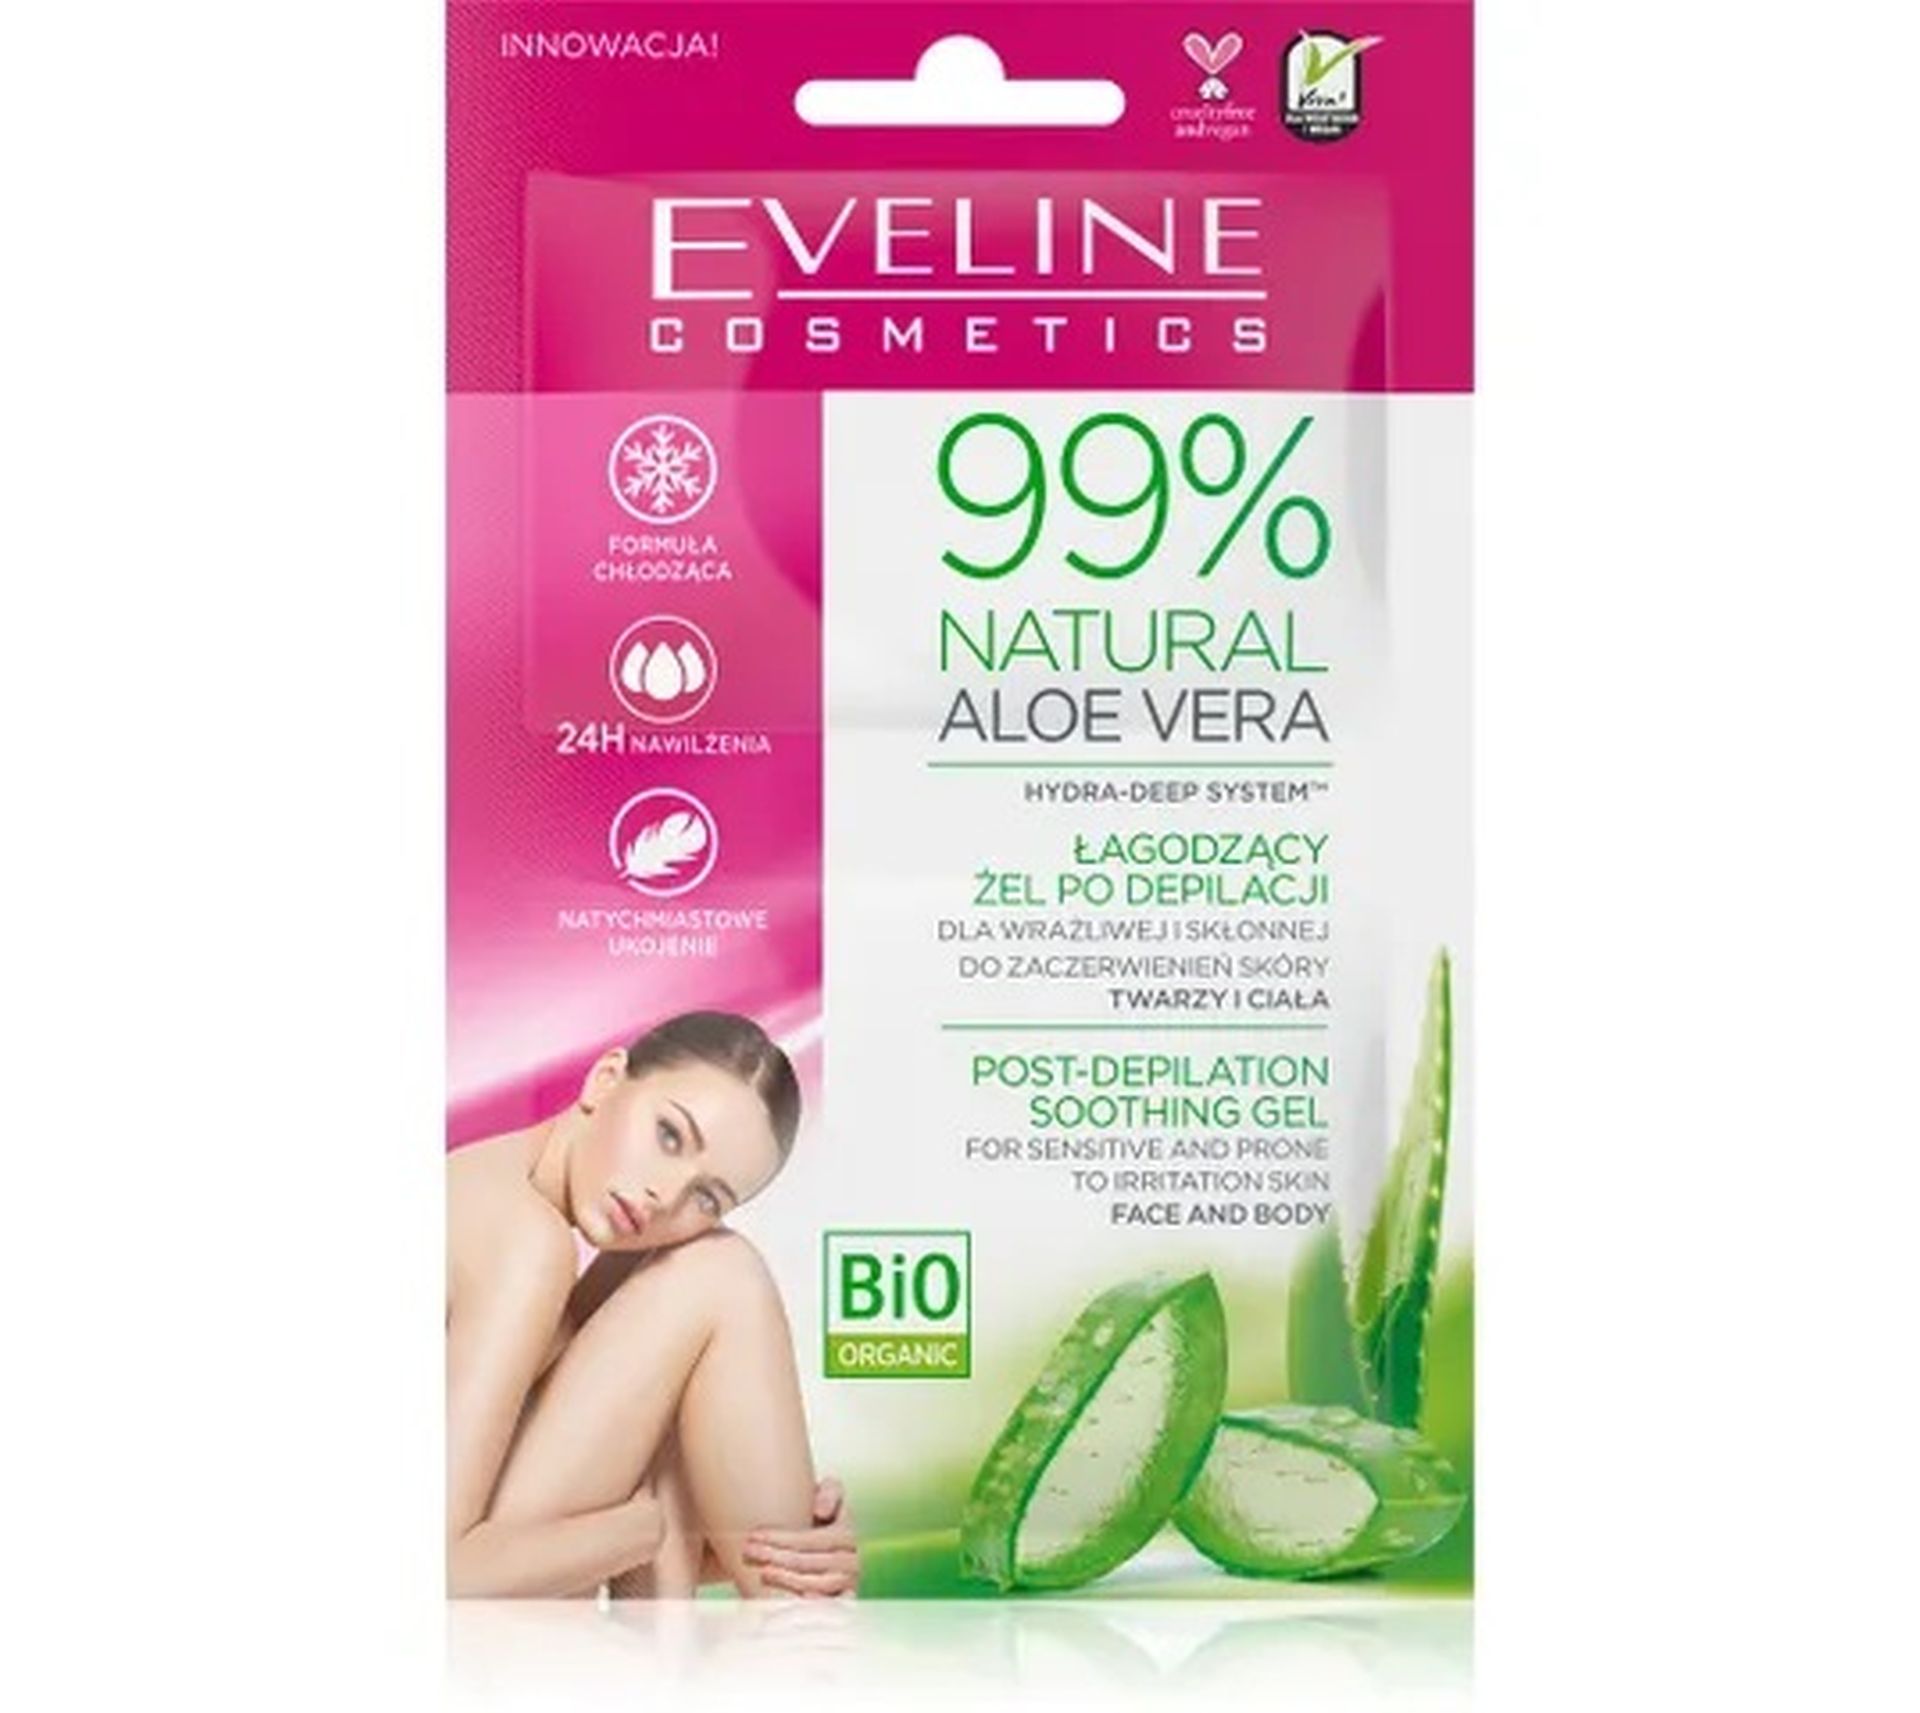 Eveline Natural Aloe Vera 99% łagodzący żel po depilacji (2 x 5 ml)